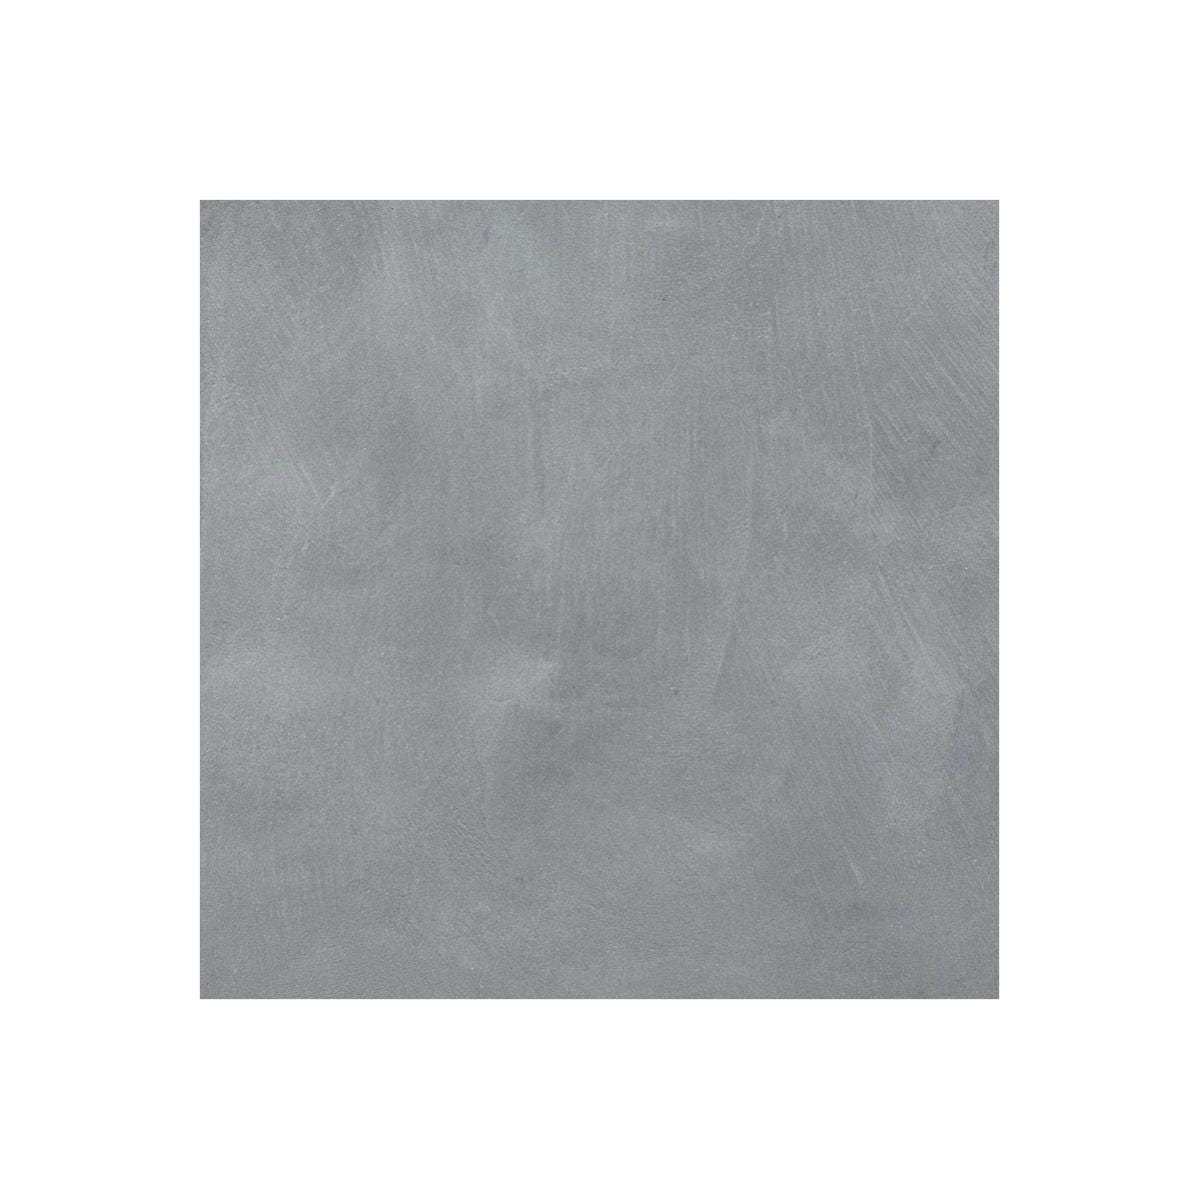 Béton Ciré Sol en - Primaire et vernis de finition inclus - 2 m² (en 2 couches) - Chartreux - Gris - ARCANE INDUSTRIES 6